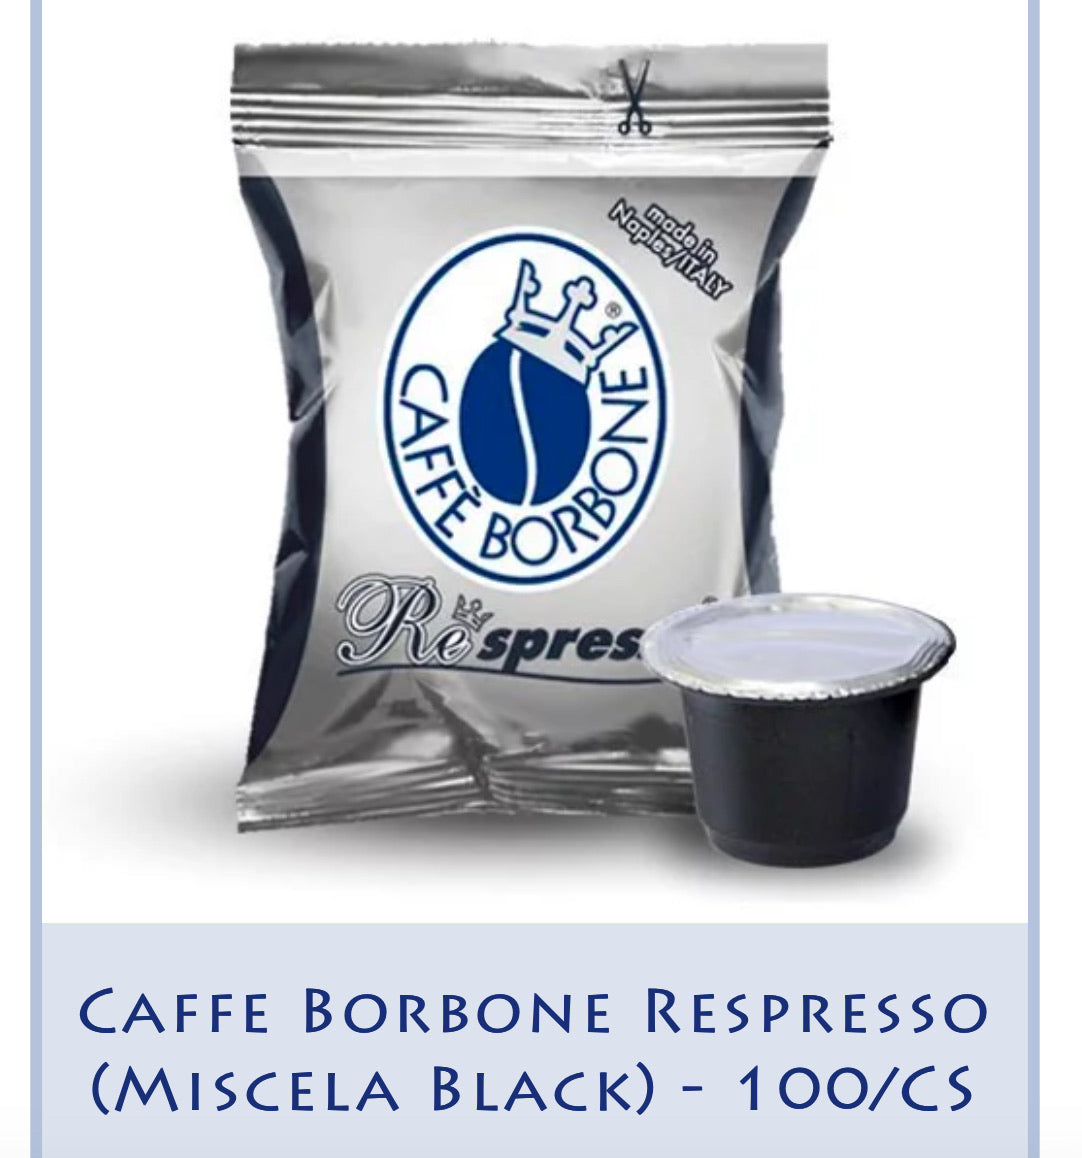 Caffe Borbone Respresso (Miscela Black) - 100/CS